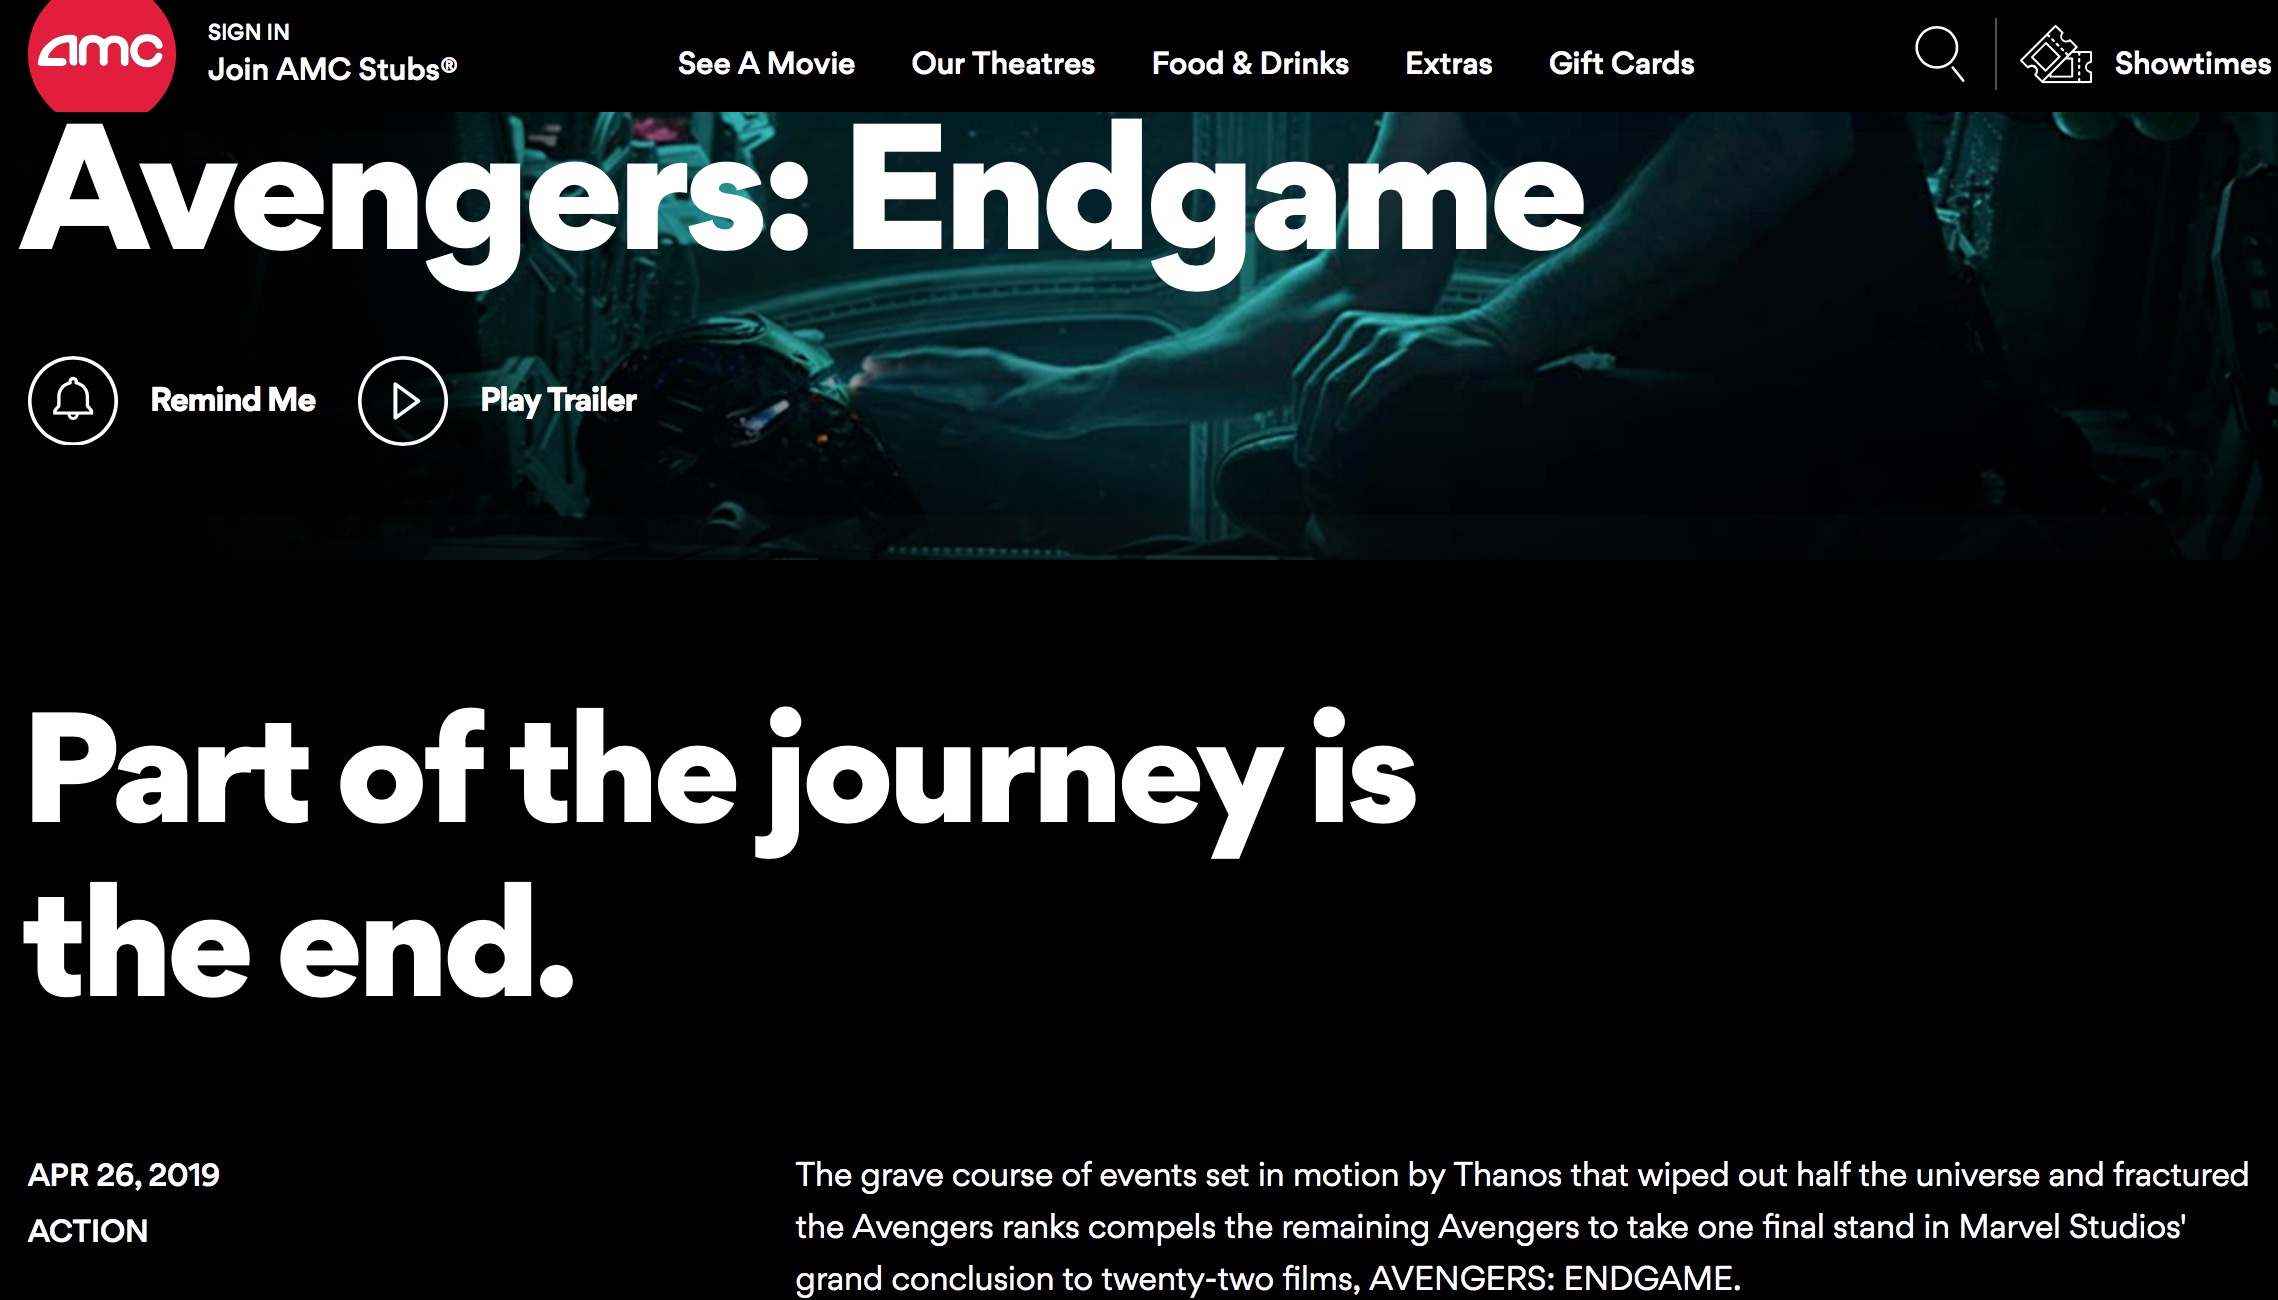 Avengers_Endgame-Marvel-AMC Studios-02 Theaters